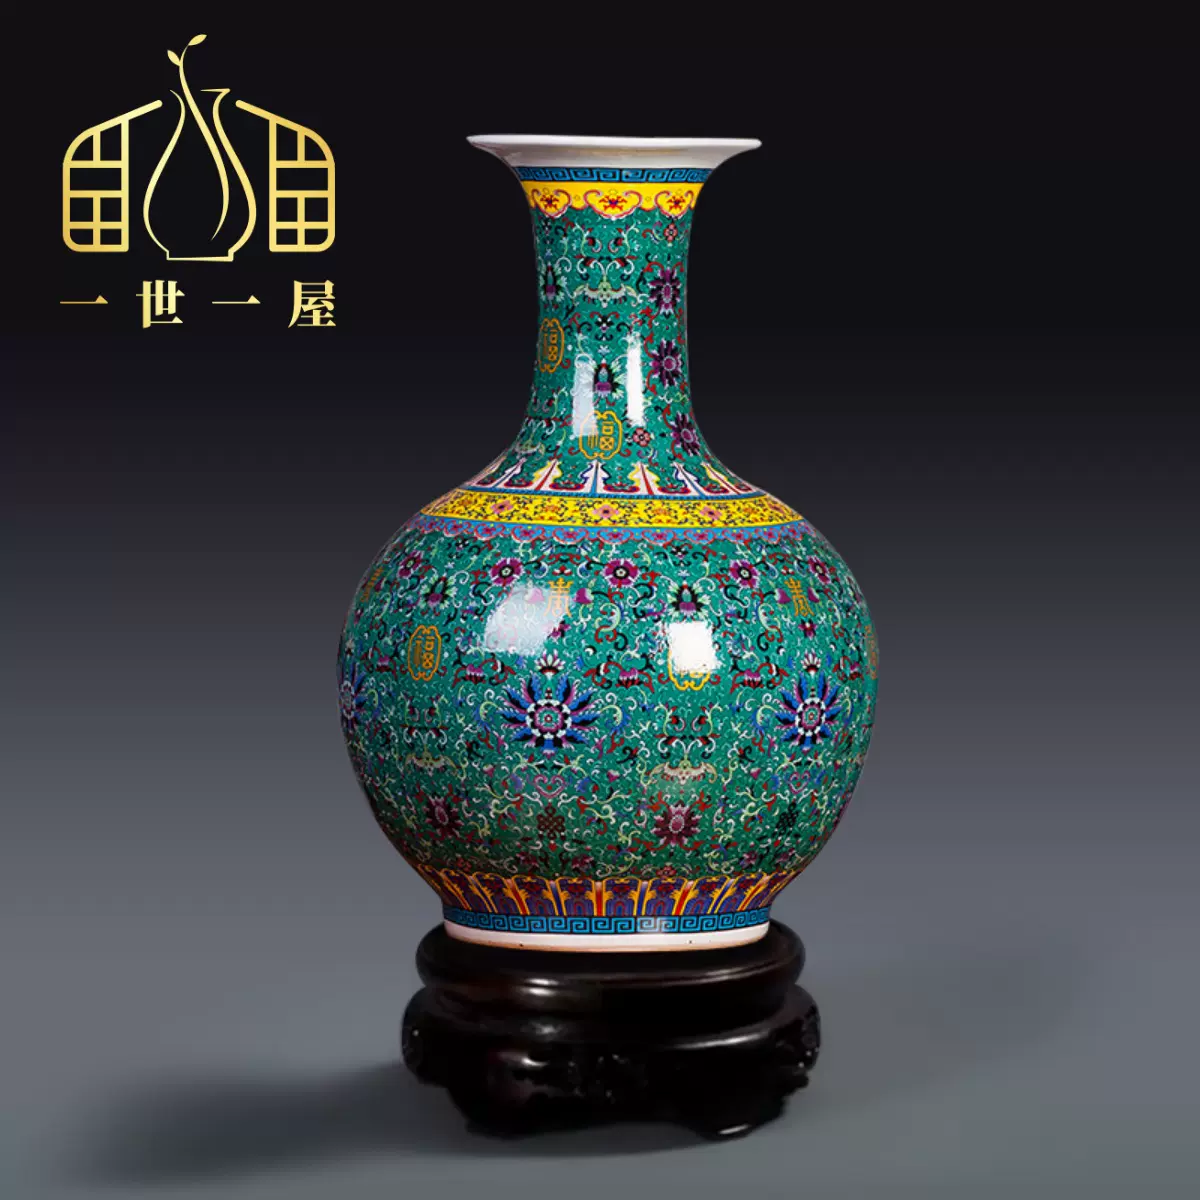 一世一屋景德镇陶瓷珐琅彩落地大花瓶客厅插花仿古装饰工艺品摆件-Taobao